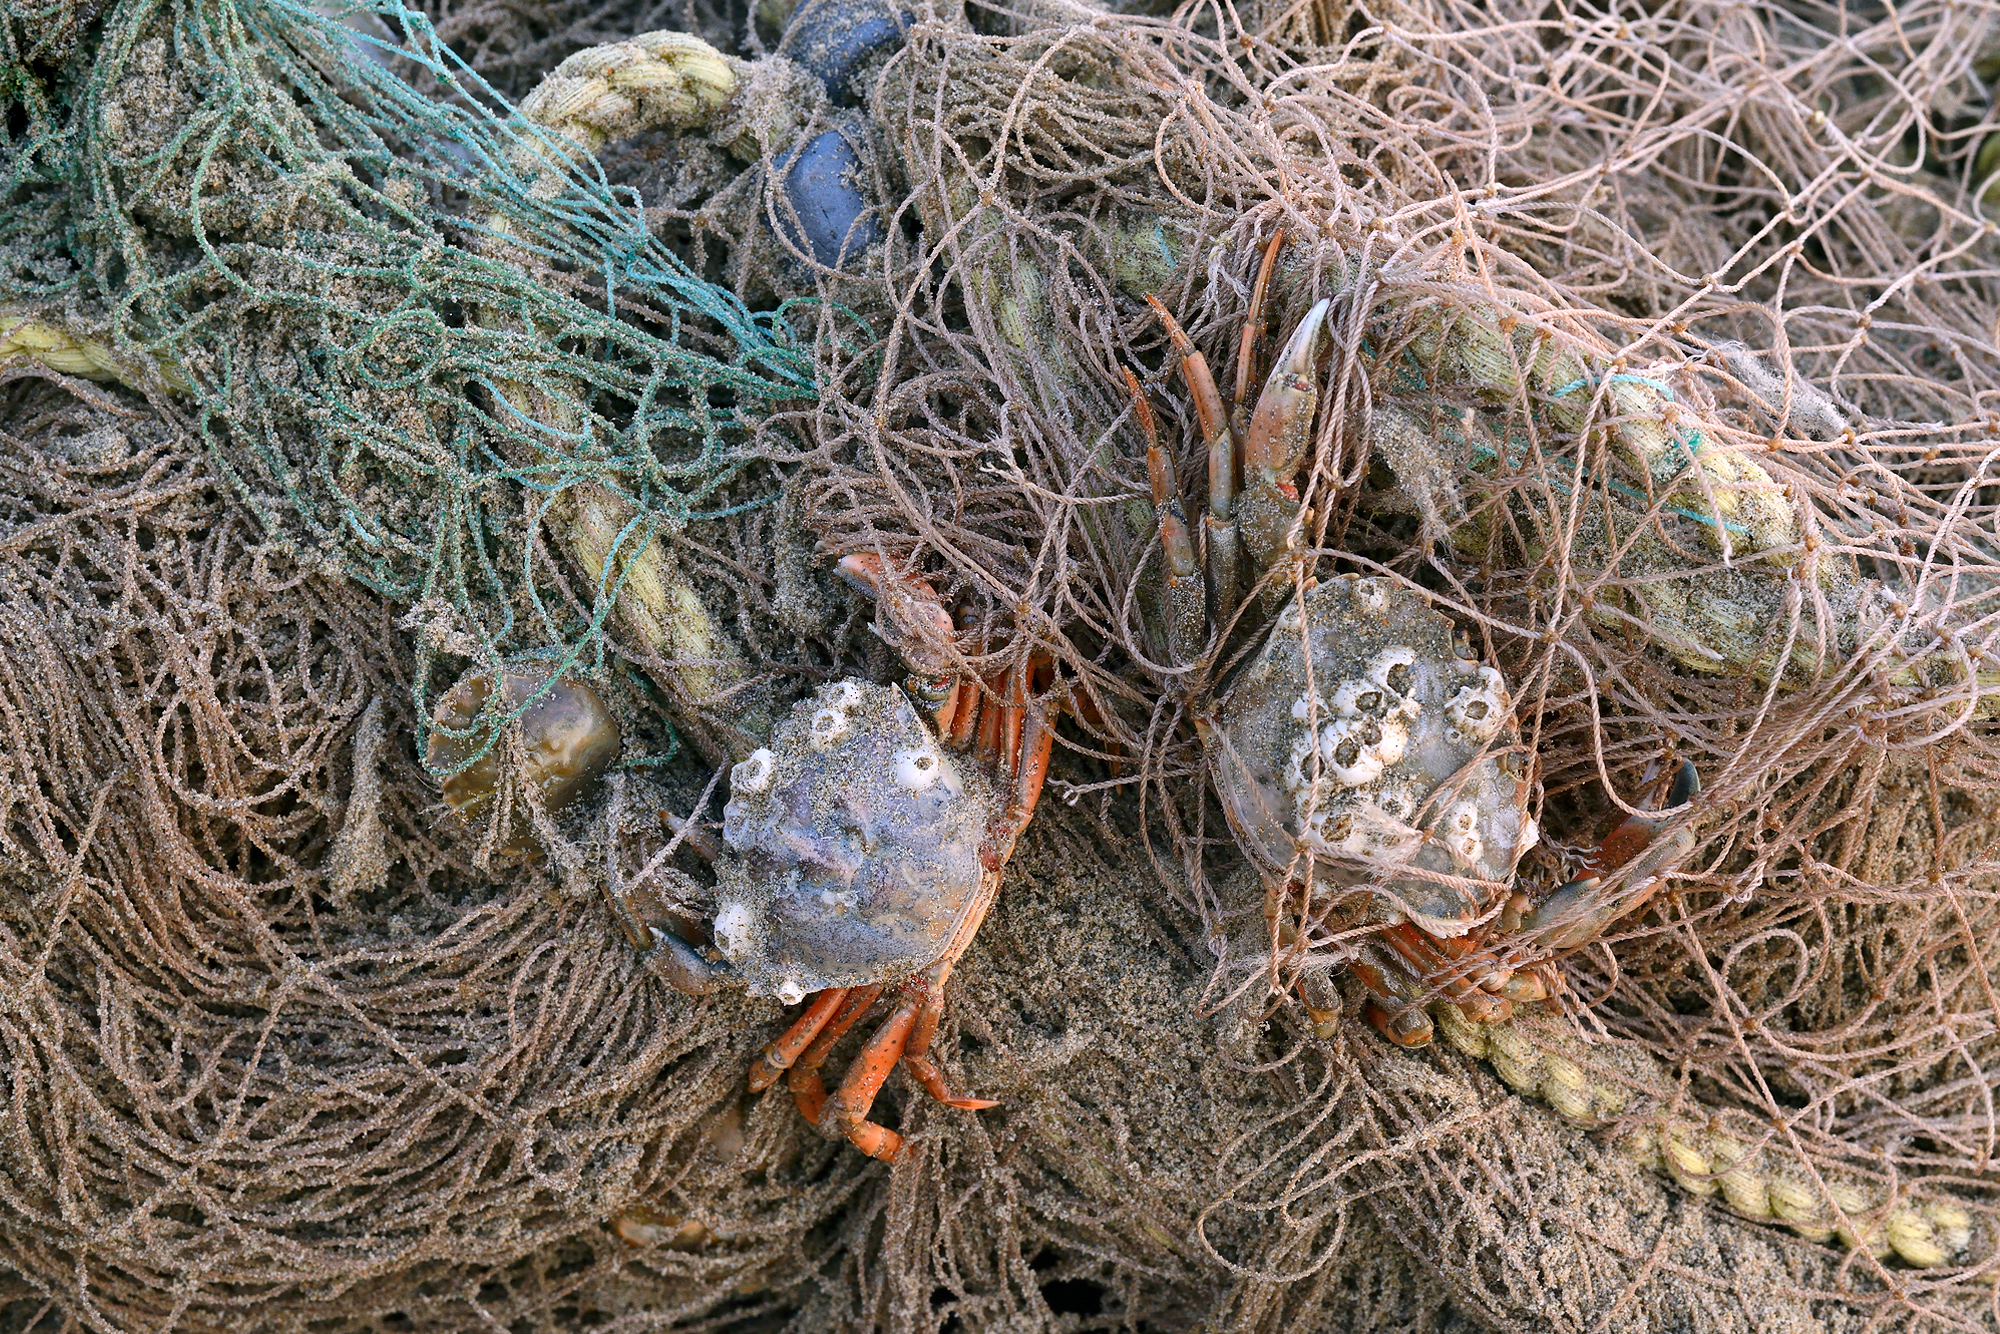 Krabben gevangen in een aangespoeld visnet na een storm op het strand van Wijk aan Zee.